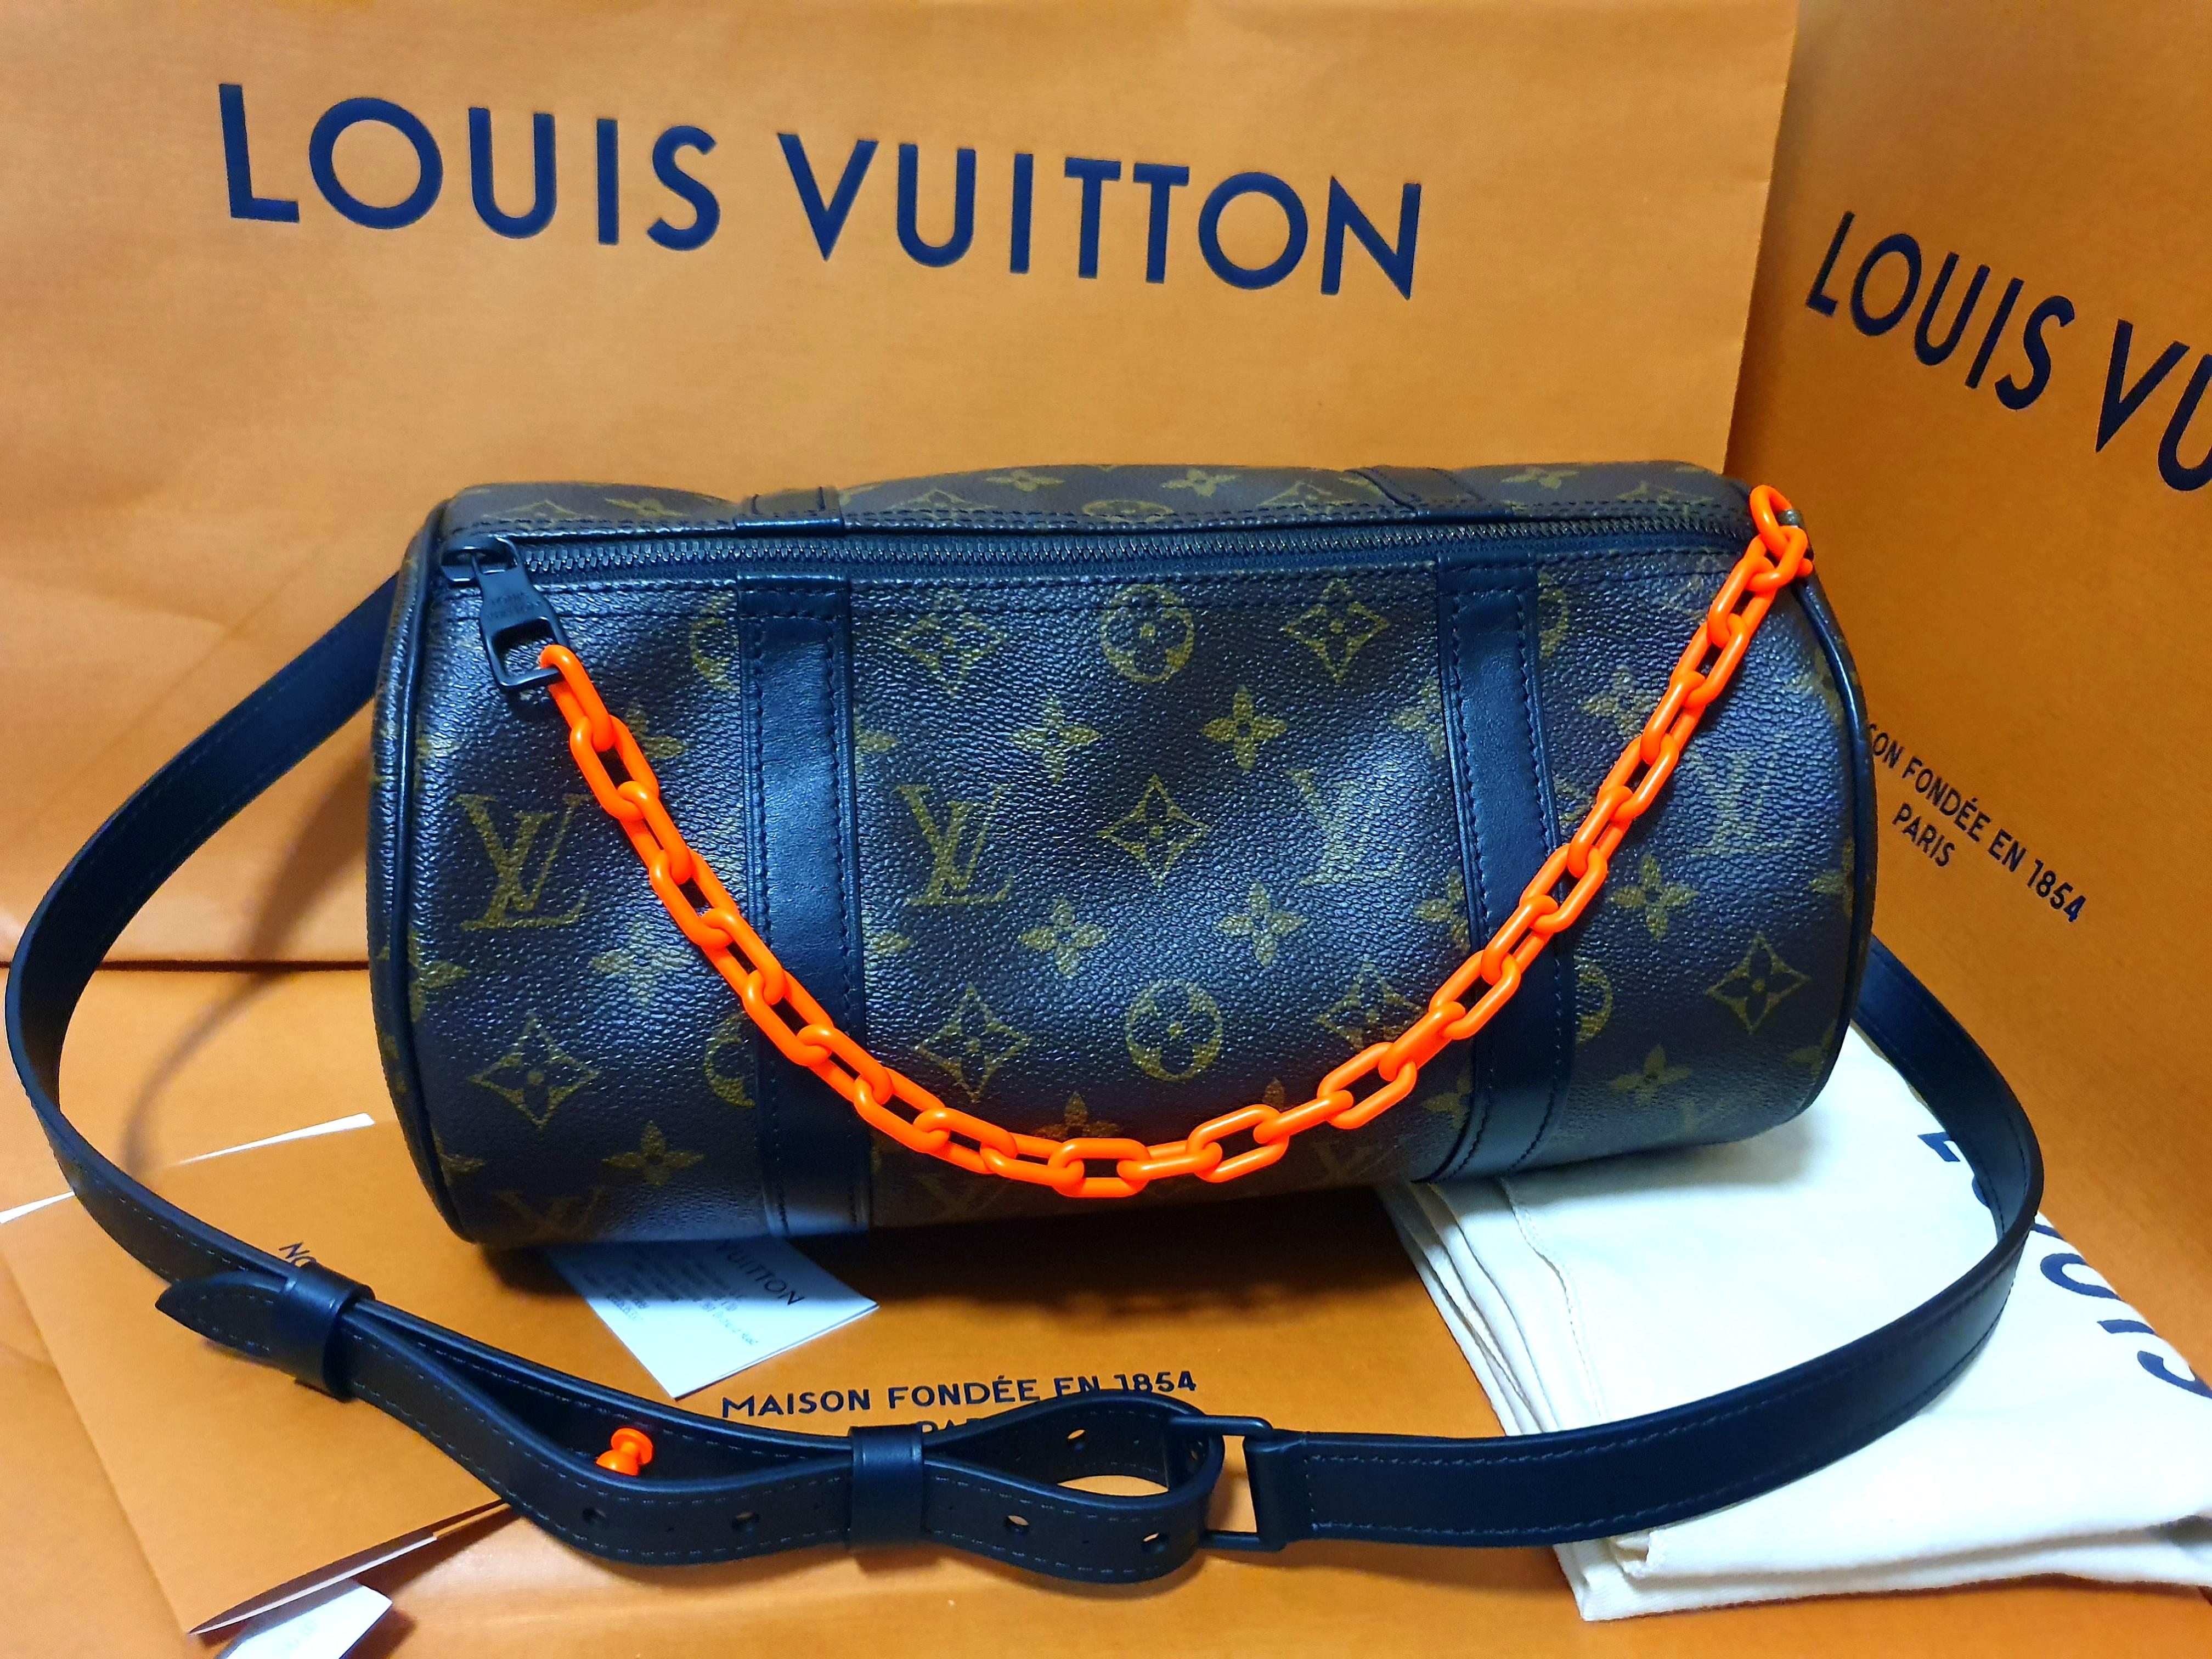 New Release! Louis Vuitton Mini Polochon Virgin Abloh Men's SS19 